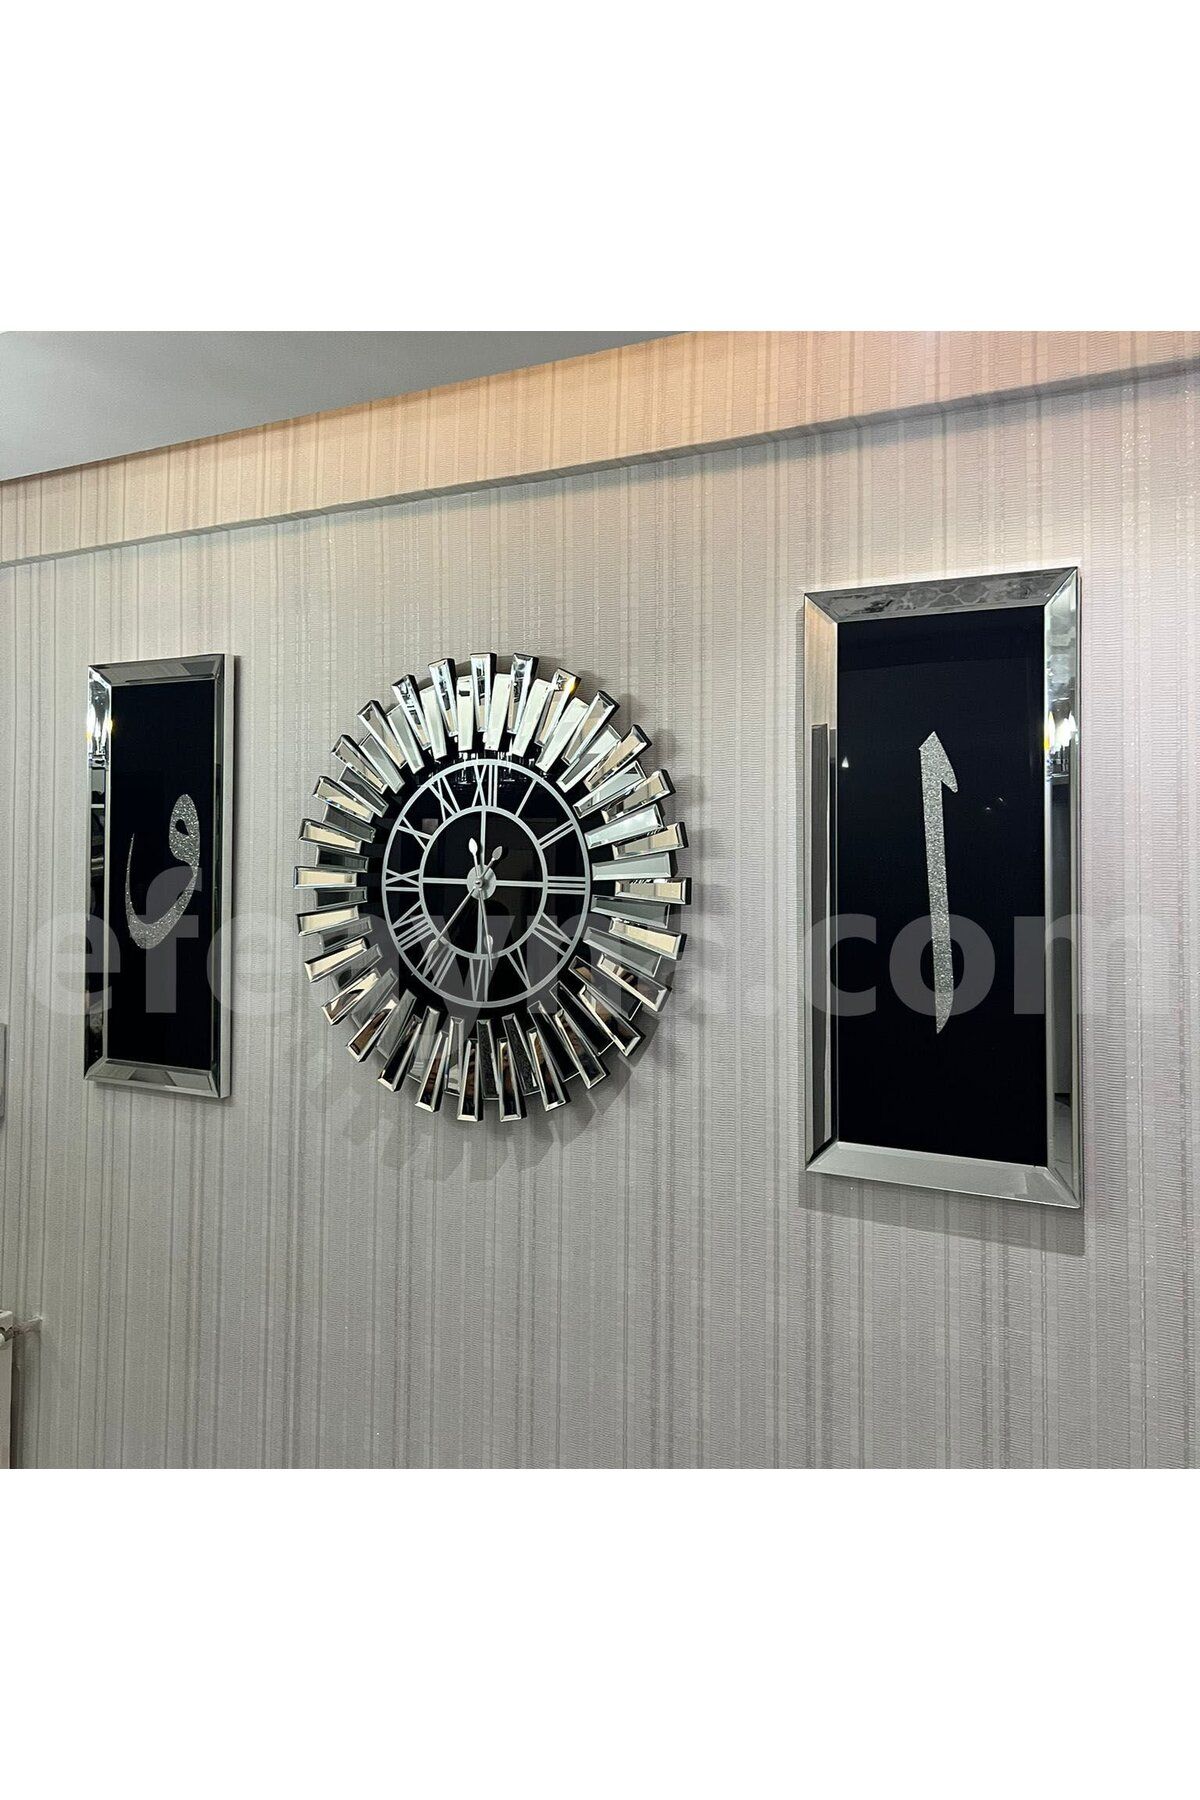 Efe Ayna PİYANO-X ELİFVAV - 3'LÜ GÜMÜŞ SAAT &TABLO SETİ-KÜÇÜK(Duvar saati:65cm,Tabloların herbiri 30x70cm)